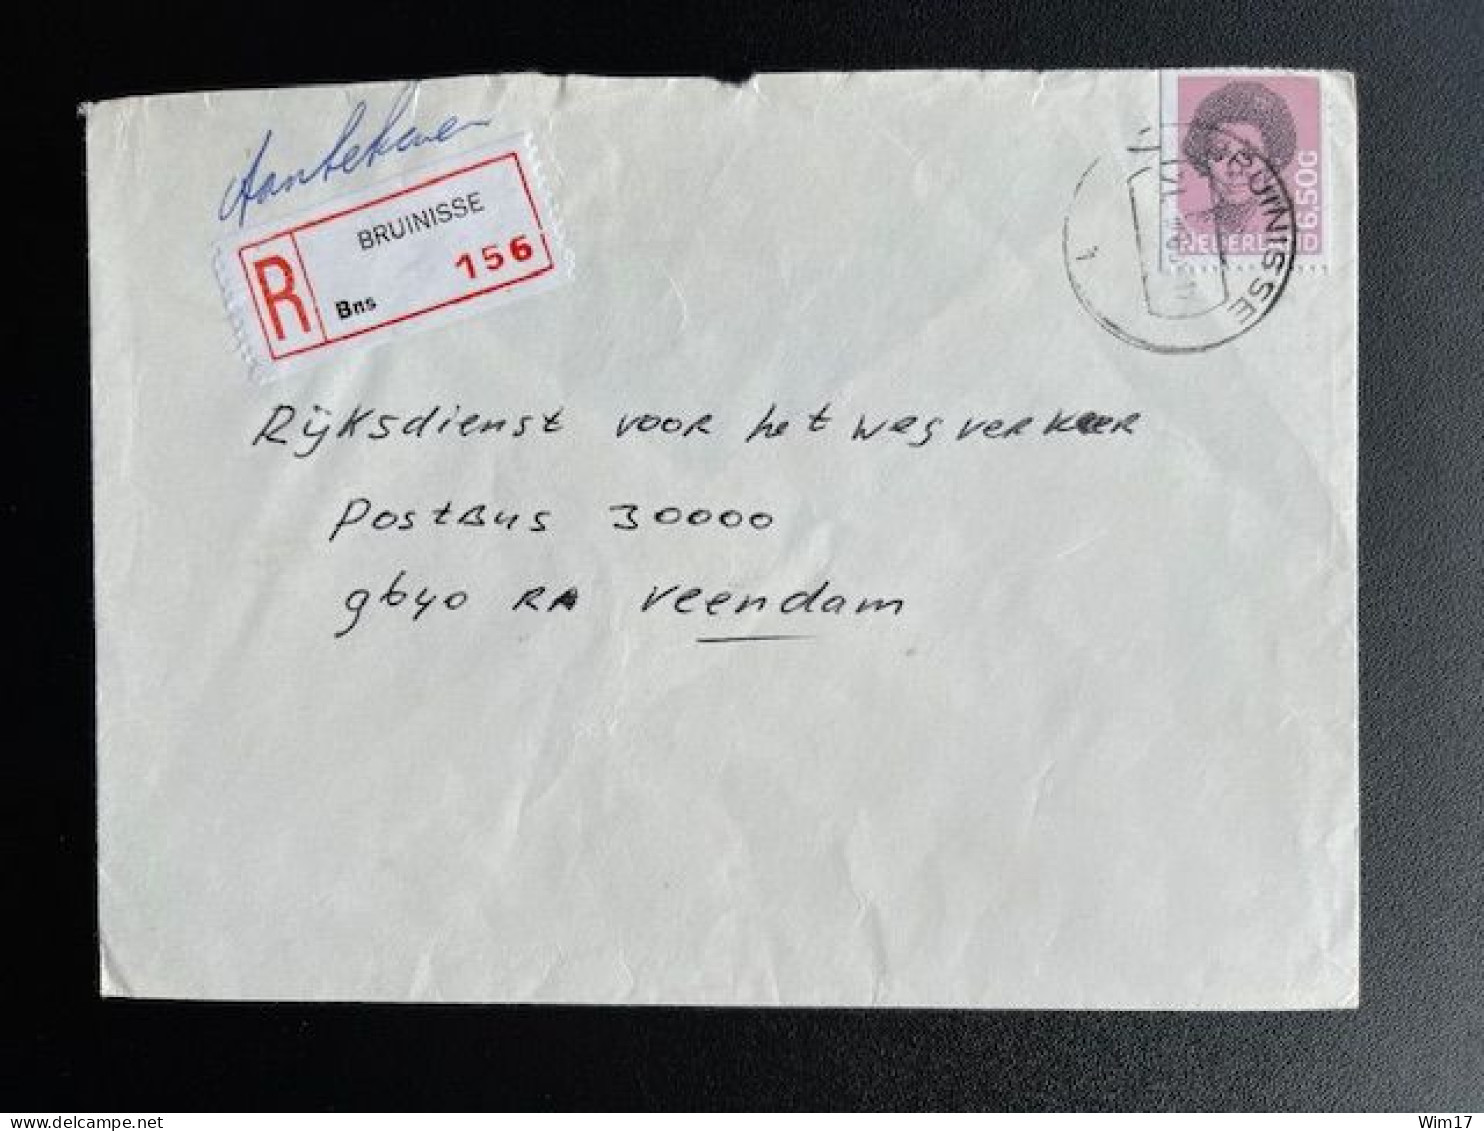 NETHERLANDS 1983 REGISTERED LETTER BRUINISSE TO VEENDAM 21-03-1983 NEDERLAND AANGETEKEND - Covers & Documents